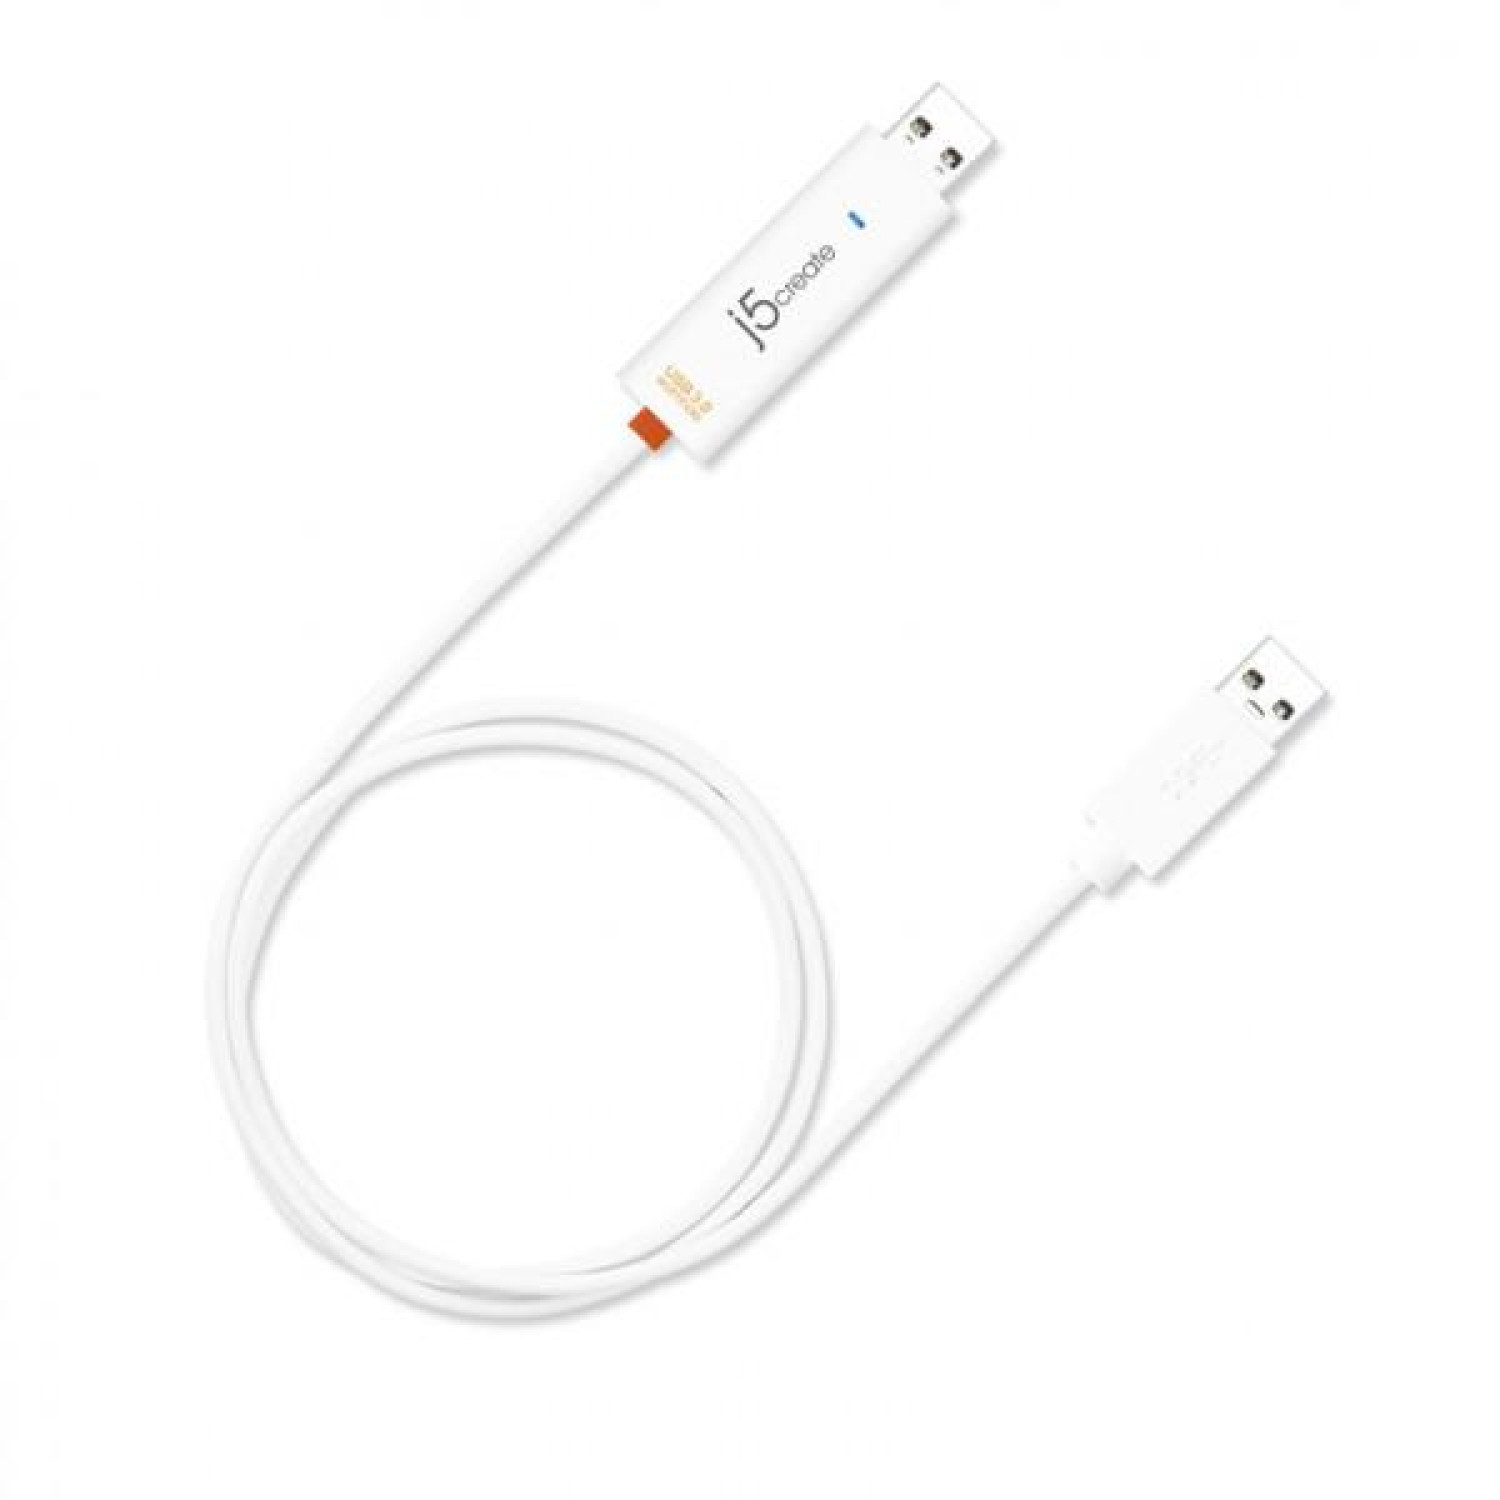 Дейта кабел USB3.0 j5create JUC500 Wormwhole, за прехвърляне на данни между компютри/таблети Win/MAC/iPad